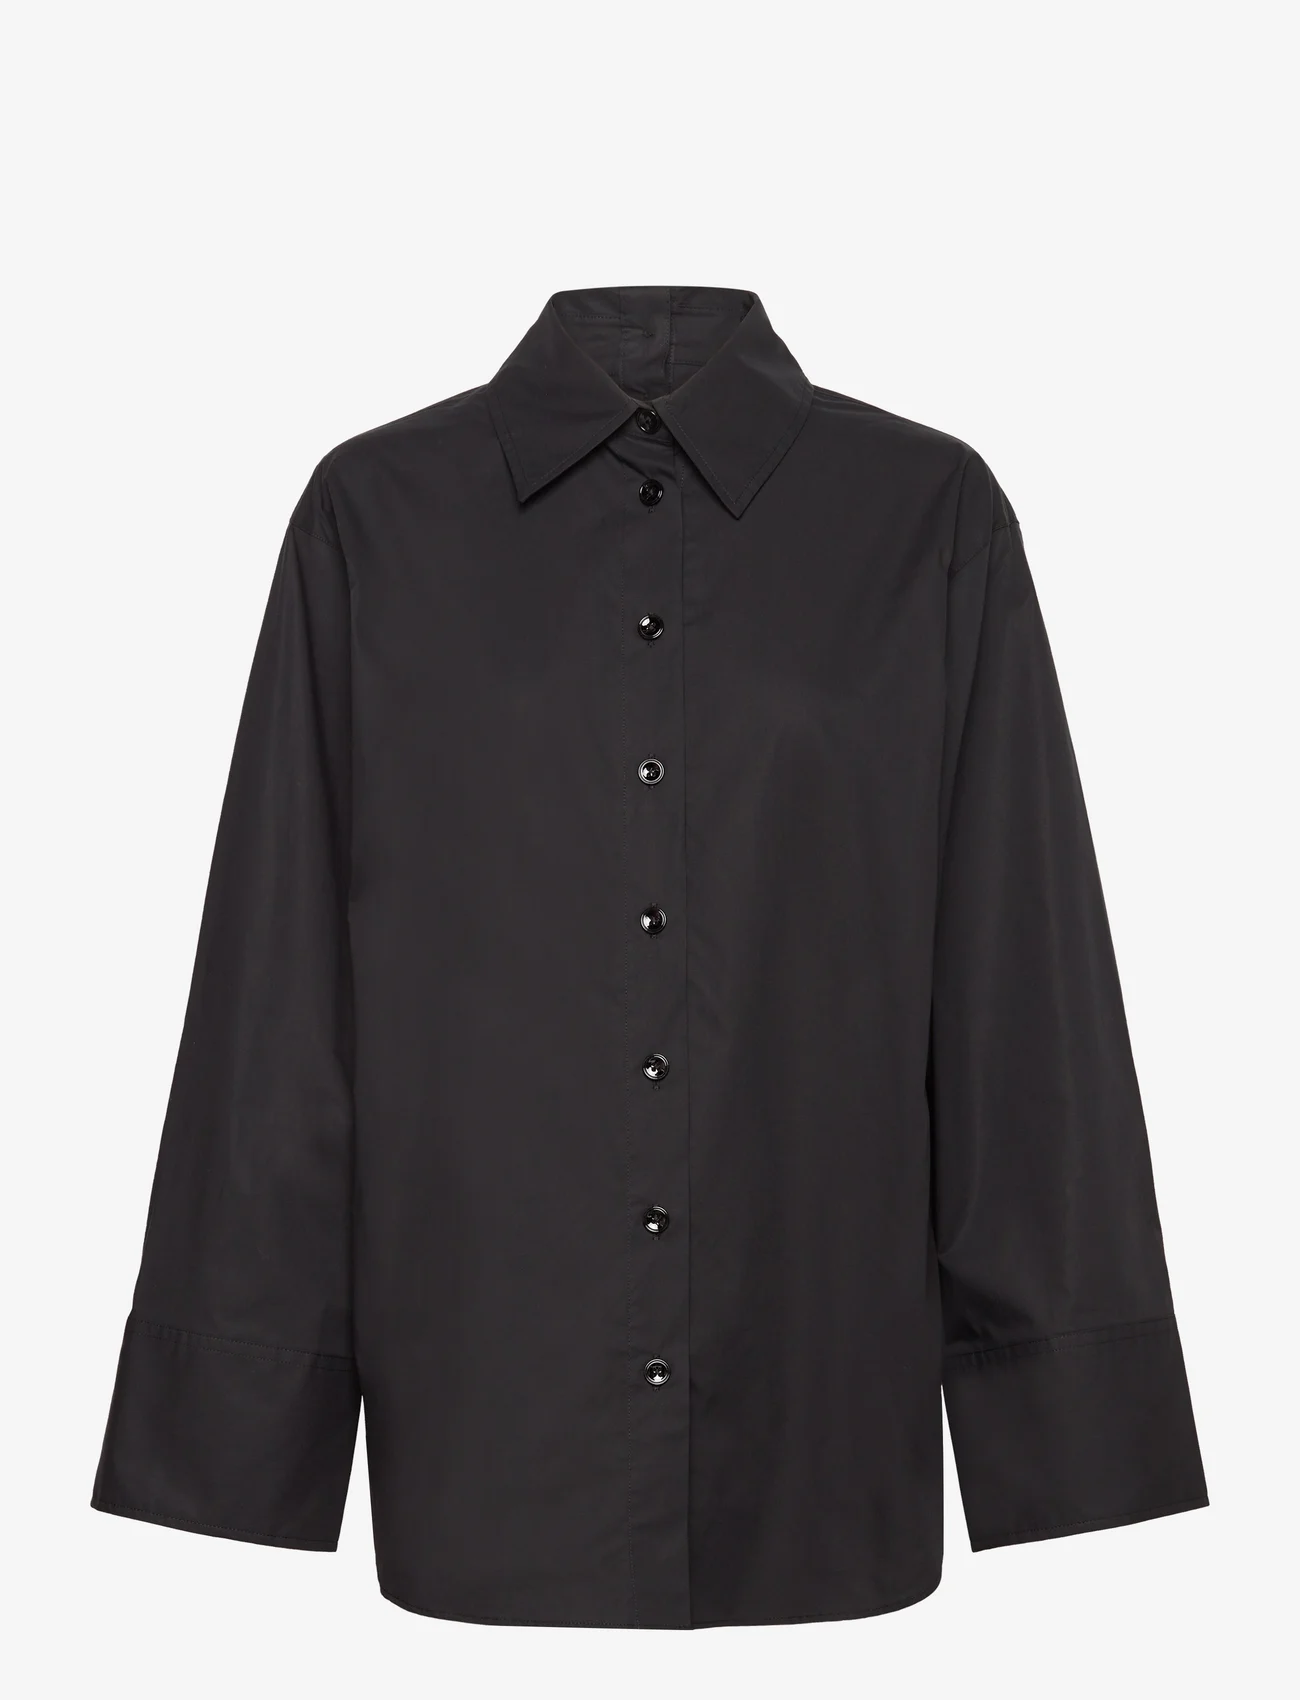 RODEBJER - Rodebjer Imola - marškiniai ilgomis rankovėmis - black - 0